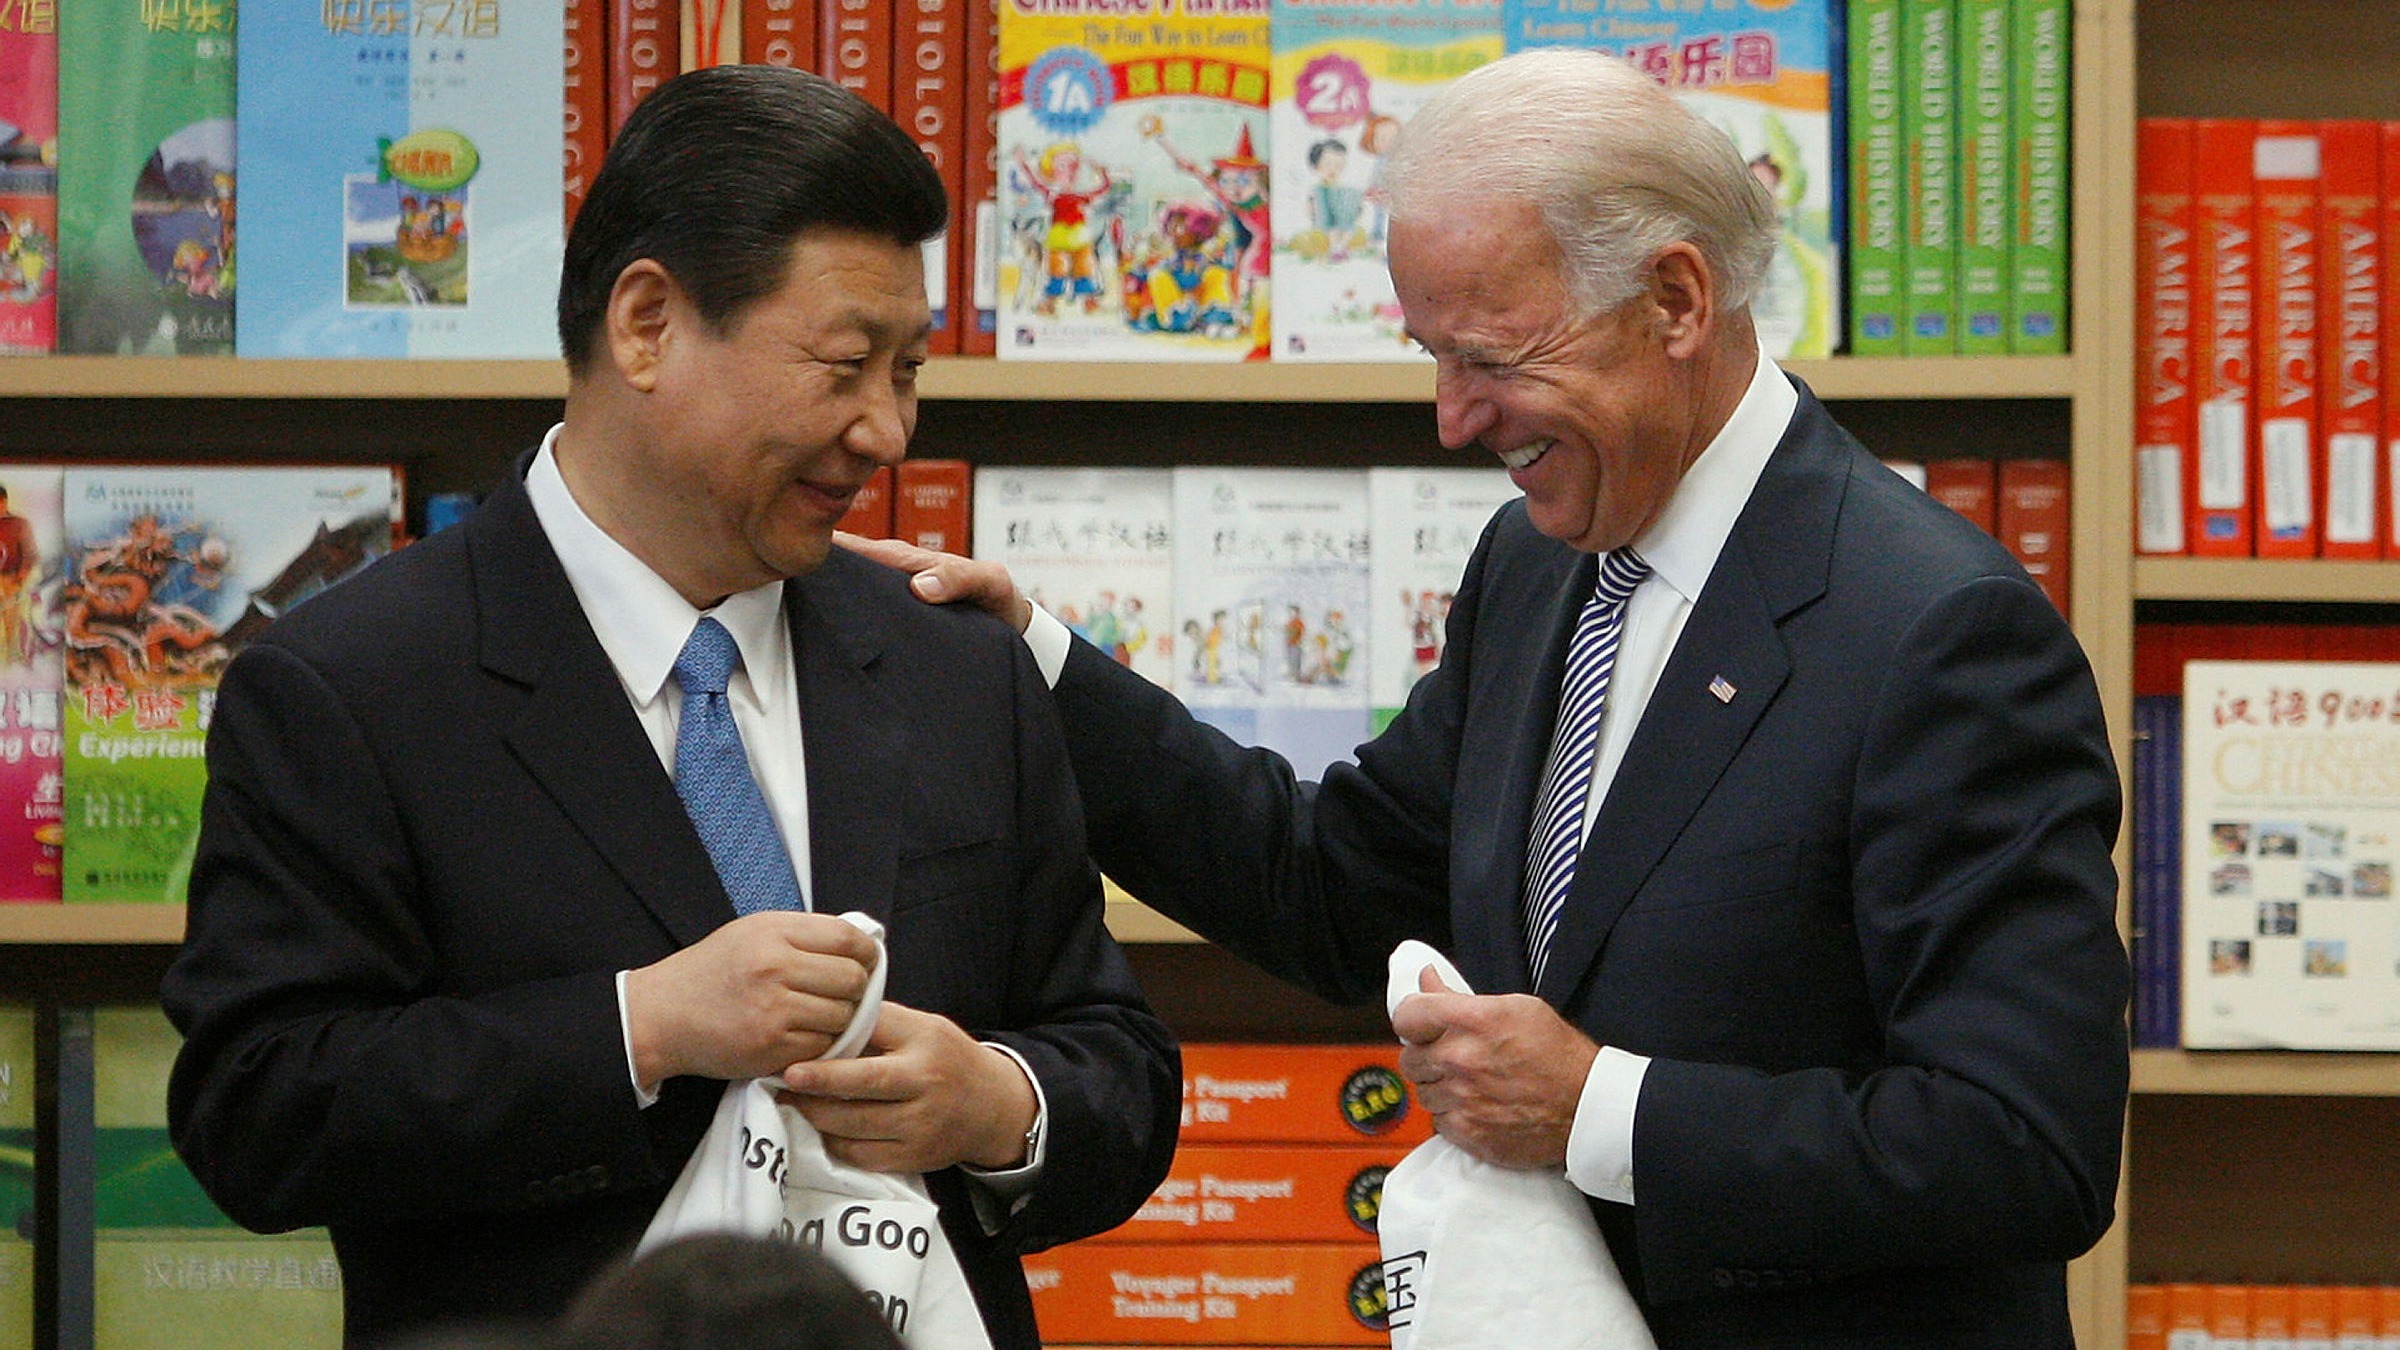 Joe Biden calls Xi Jinping in bid to reset strained US-China relations |  Financial Times